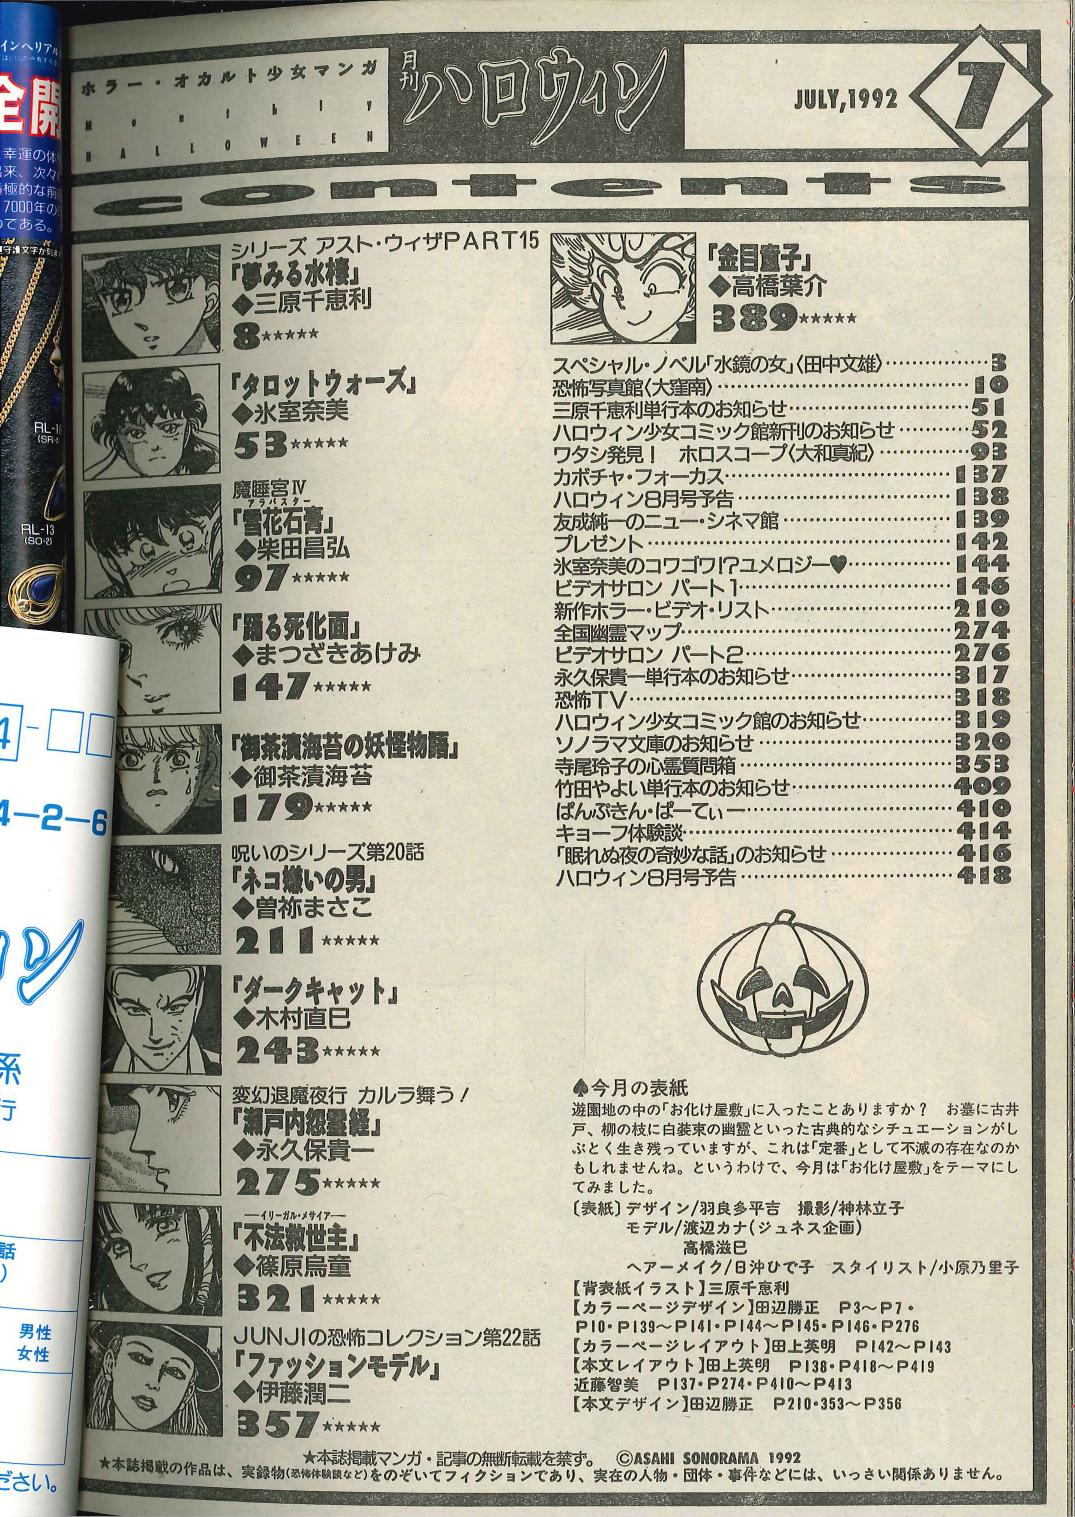 朝日ソノラマ 1992年(平成4年)の漫画雑誌 『月刊ハロウィン1992年(平成 